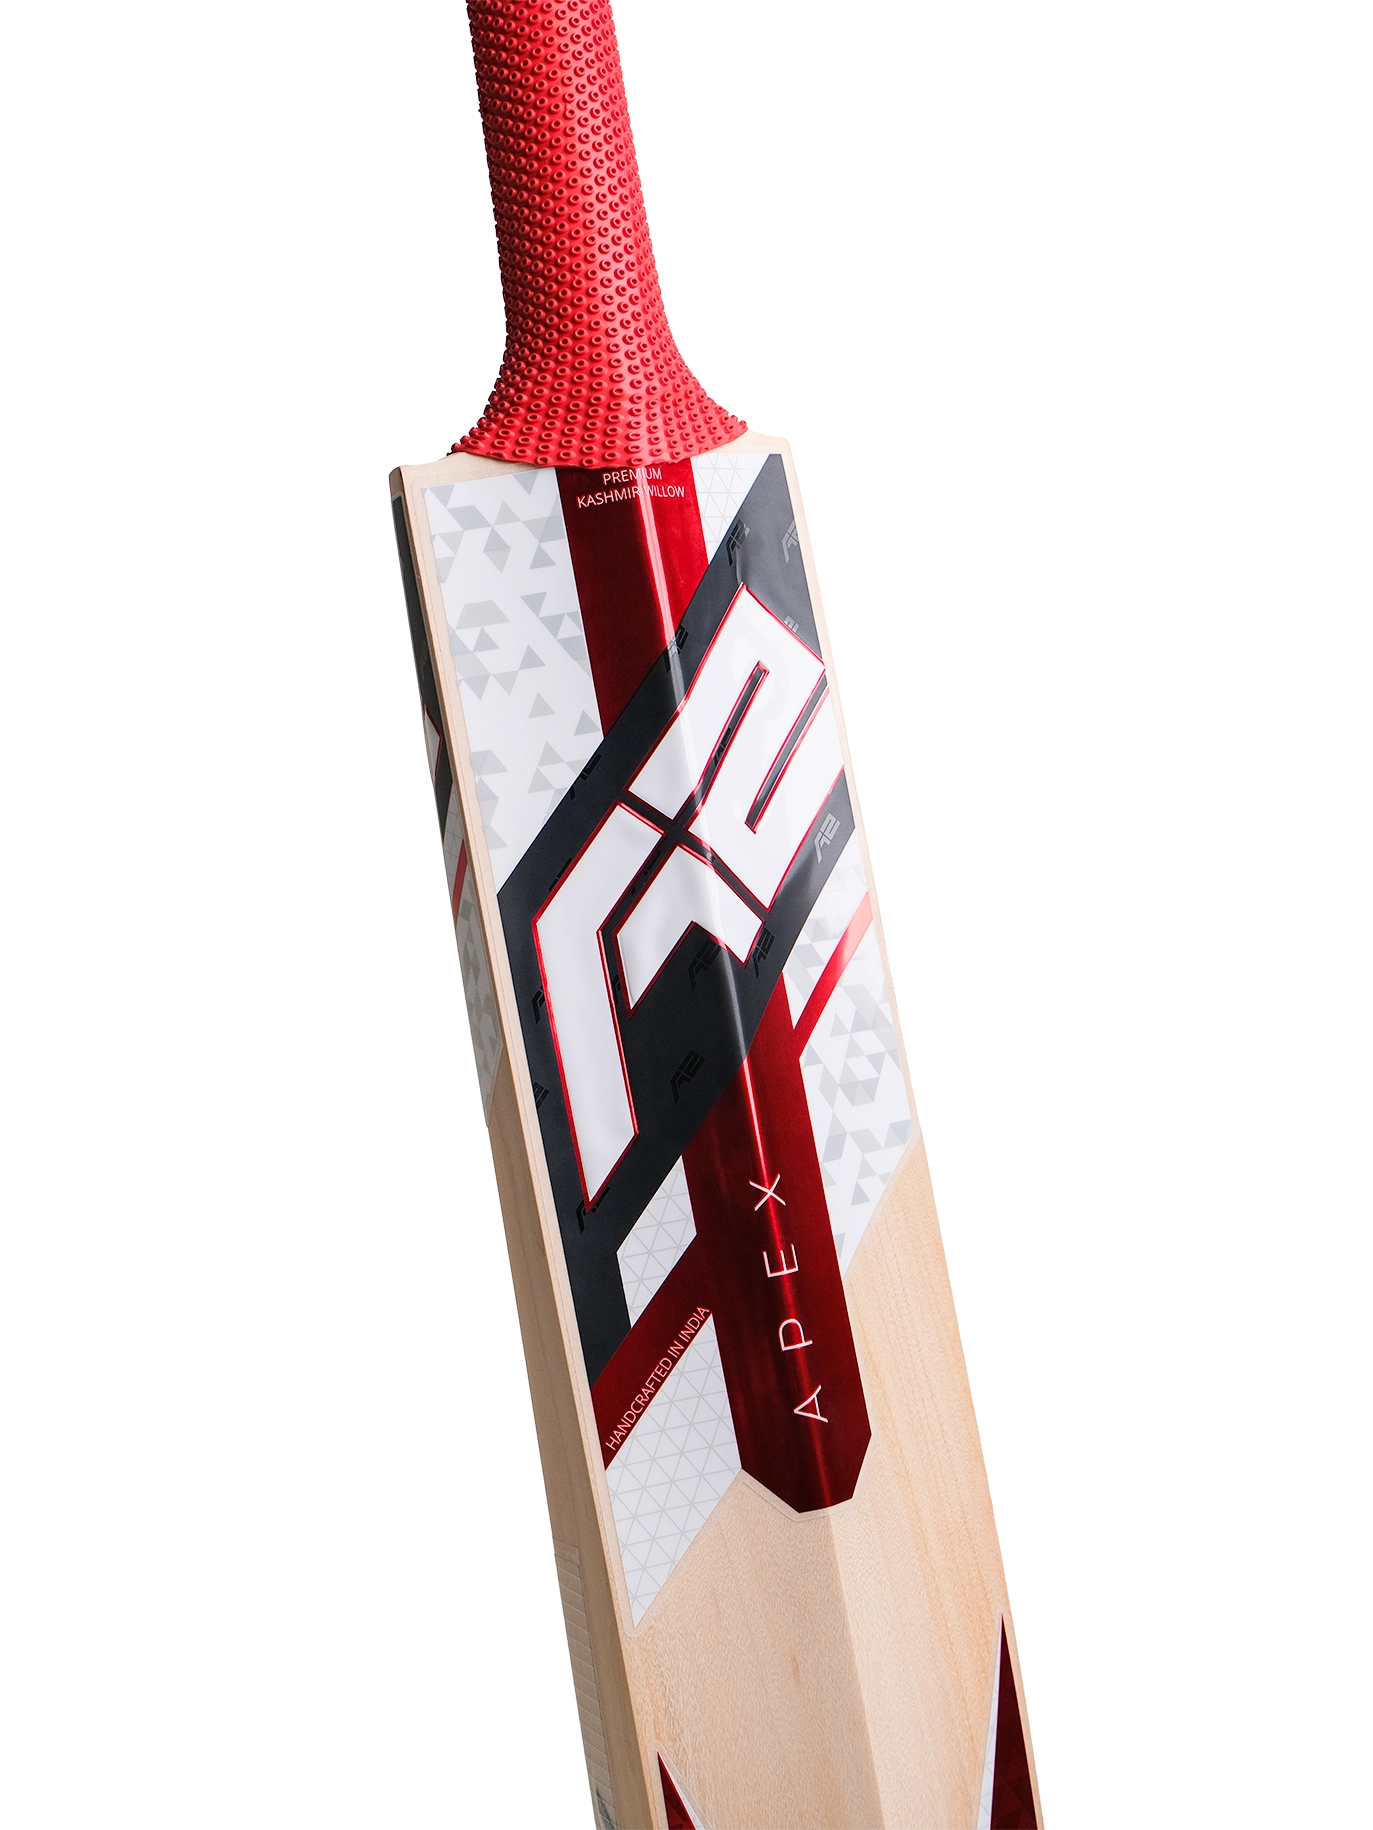 A2 Cricket Closeup of Grade 1 Kashmir Willow Cricket Bat Apex from Back